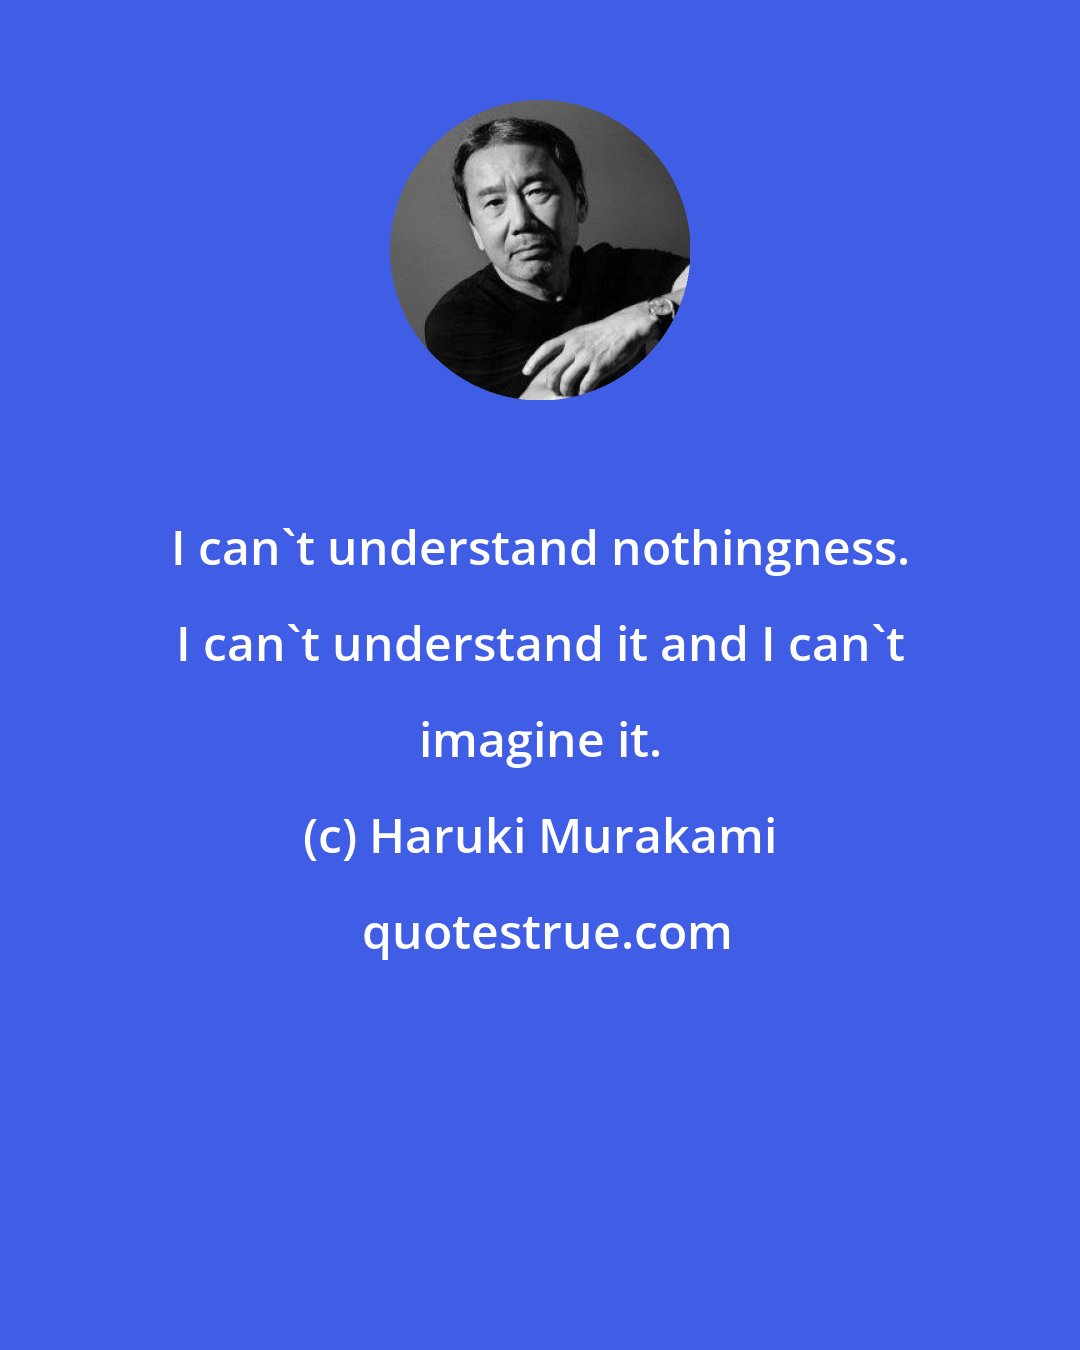 Haruki Murakami: I can't understand nothingness. I can't understand it and I can't imagine it.